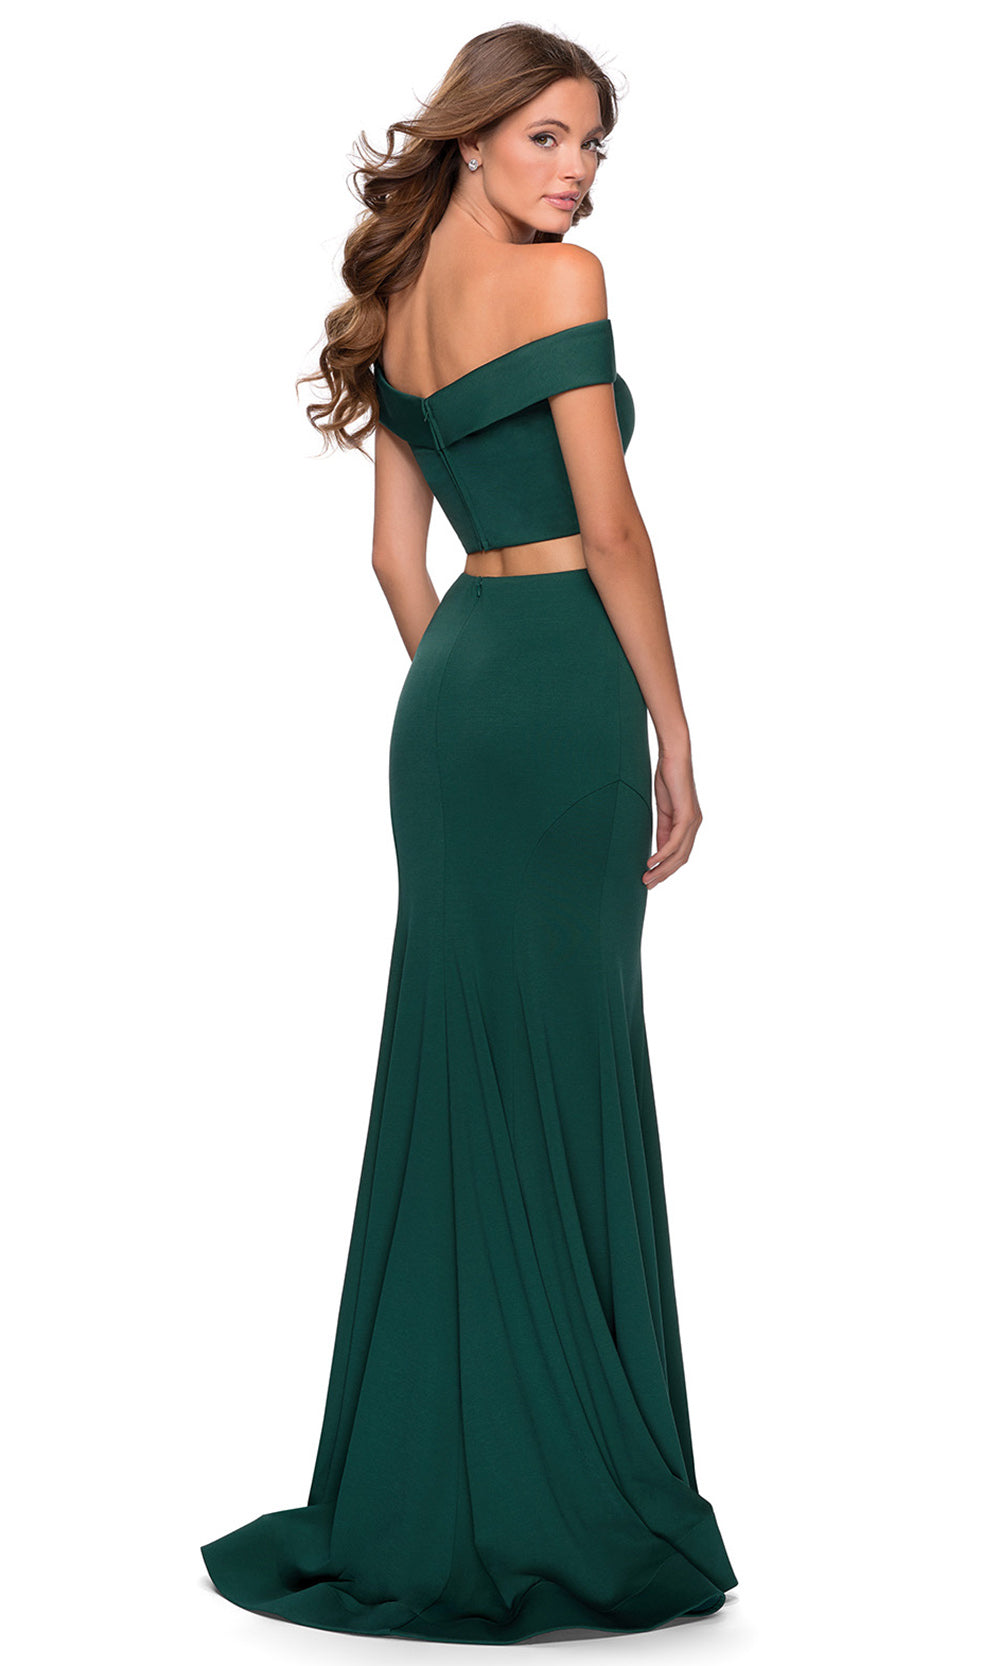 La Femme - 28521 Two-Piece Of Shoulder Sheath Dress In Green